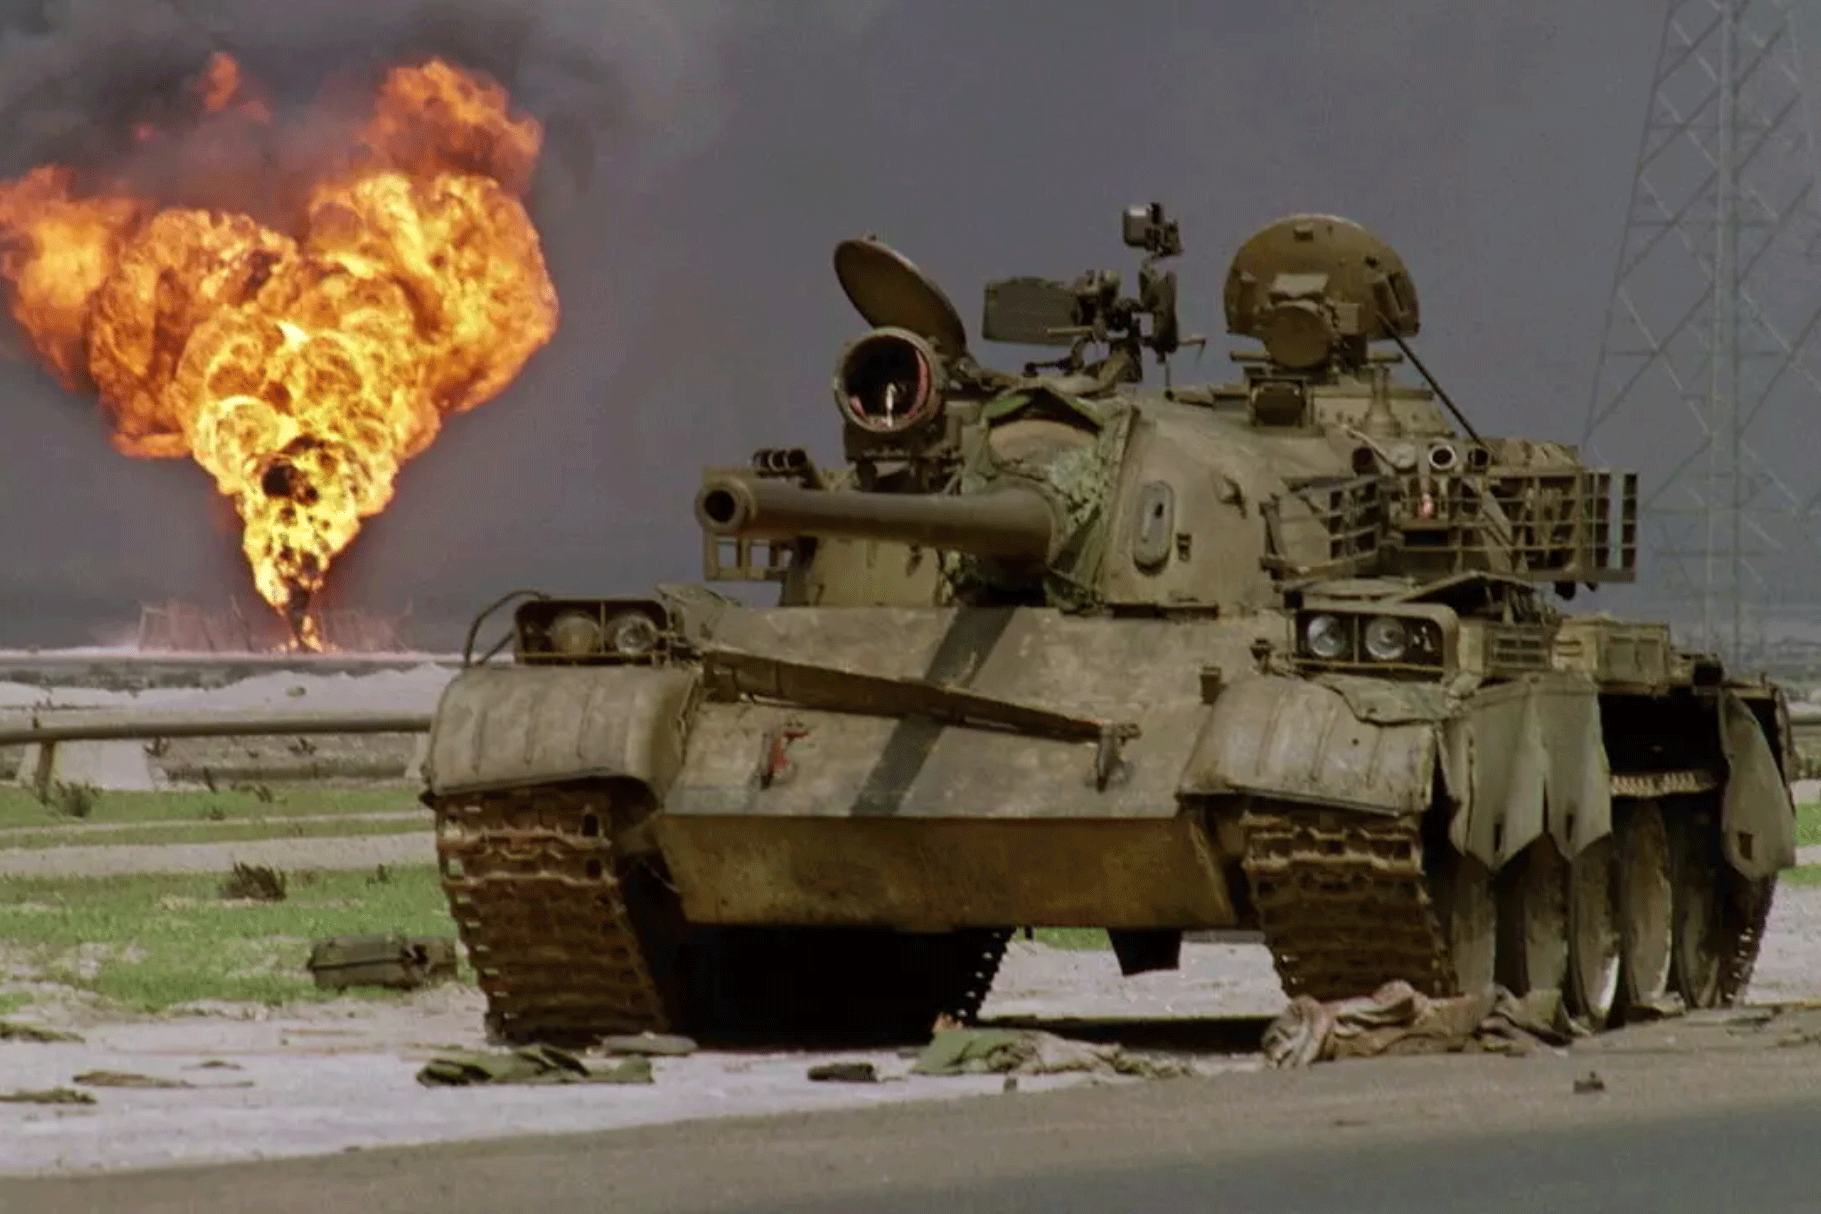 صورة من الأرشيف لدبابة عراقية متروكة في الصحراء الكويتية ويبدو حقل نفط يحترق خلفها في 2 أبريل 1991